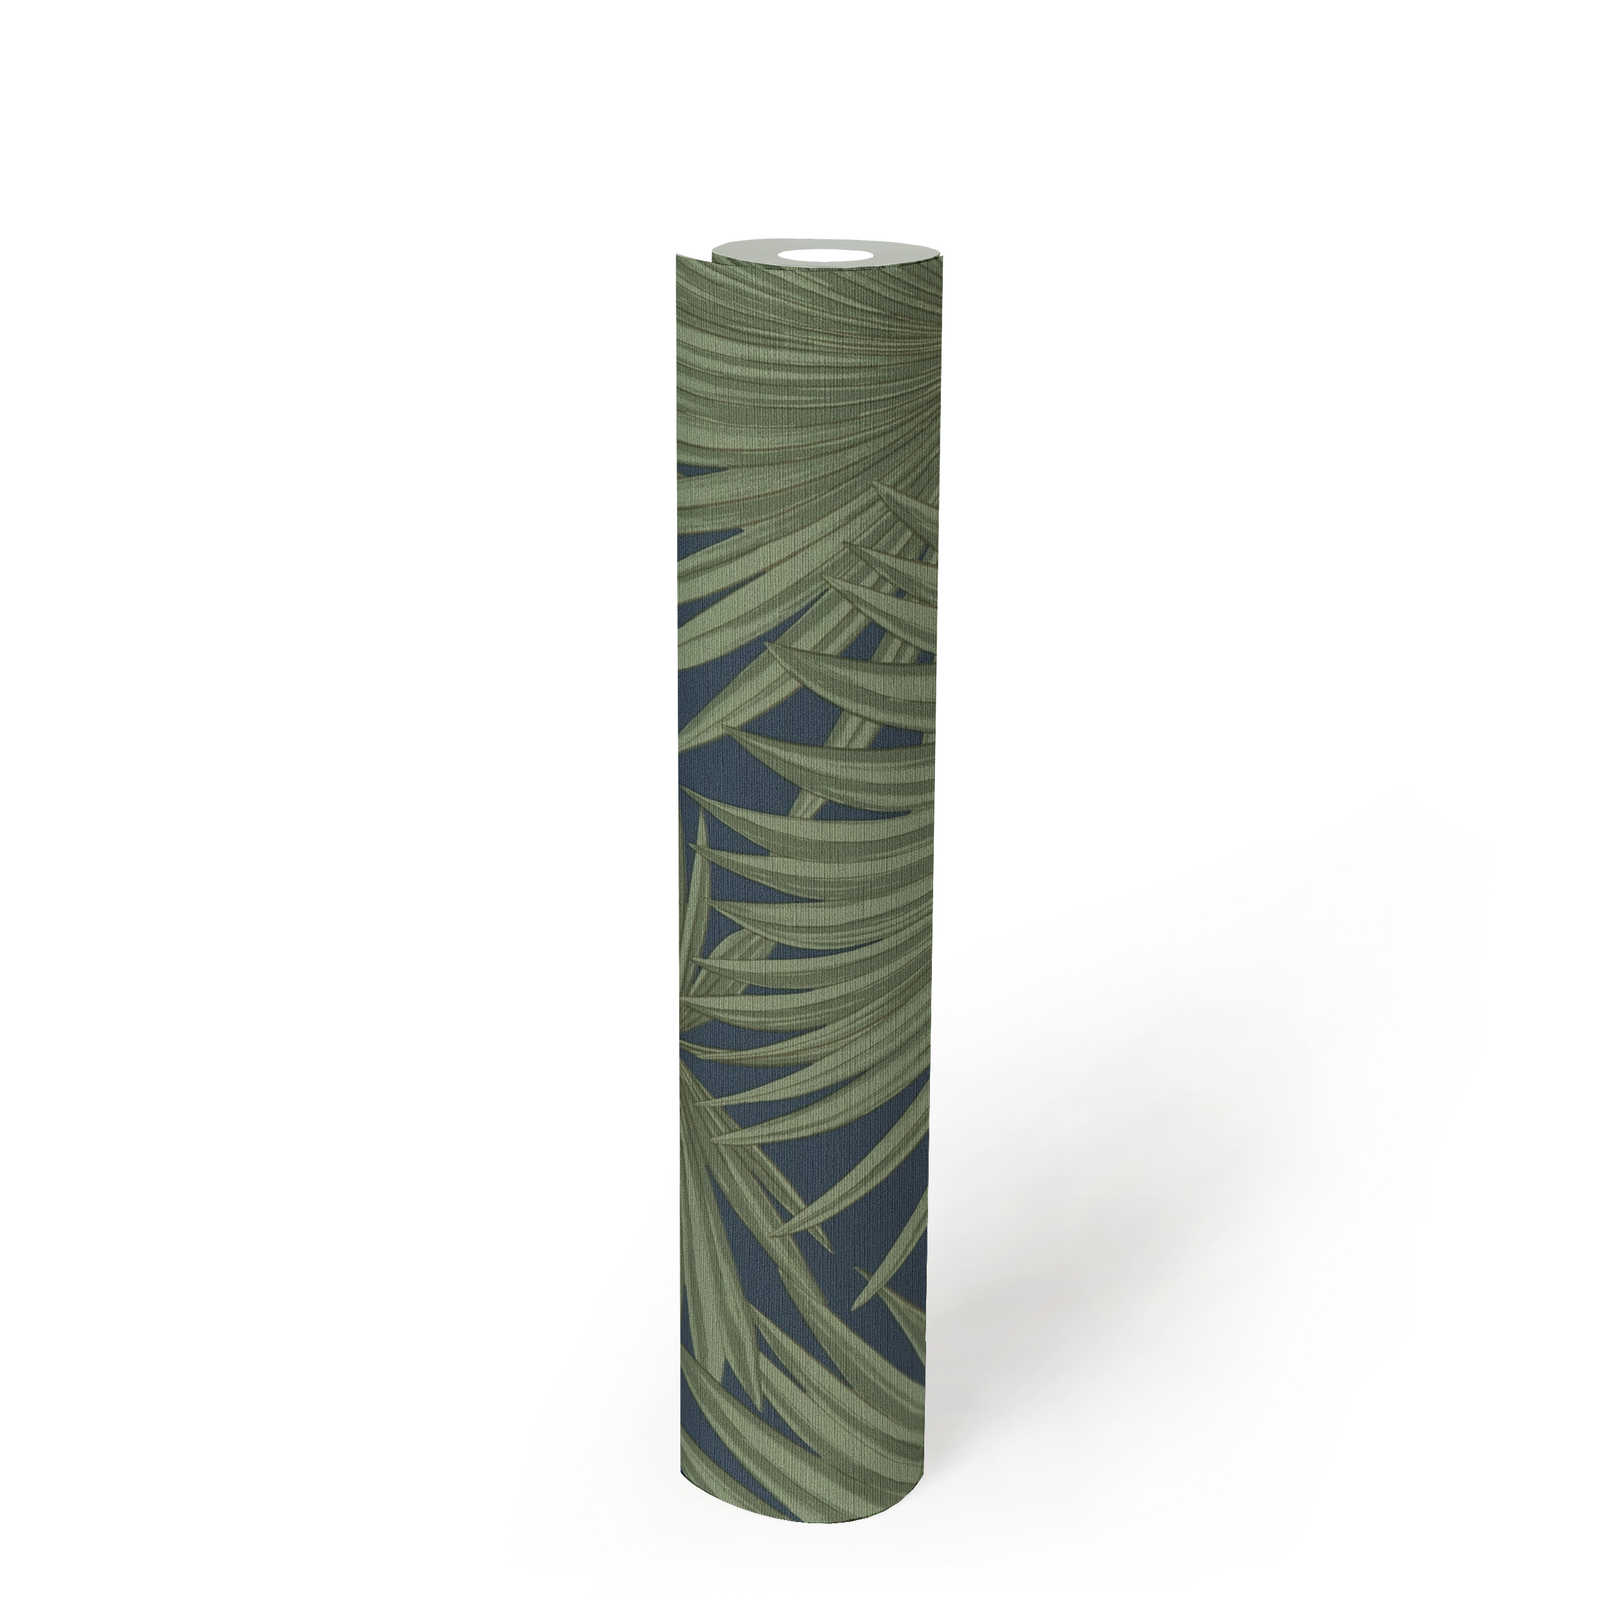             Papel pintado no tejido con hojas de palmera sobre un fondo sutil - verde, azul
        